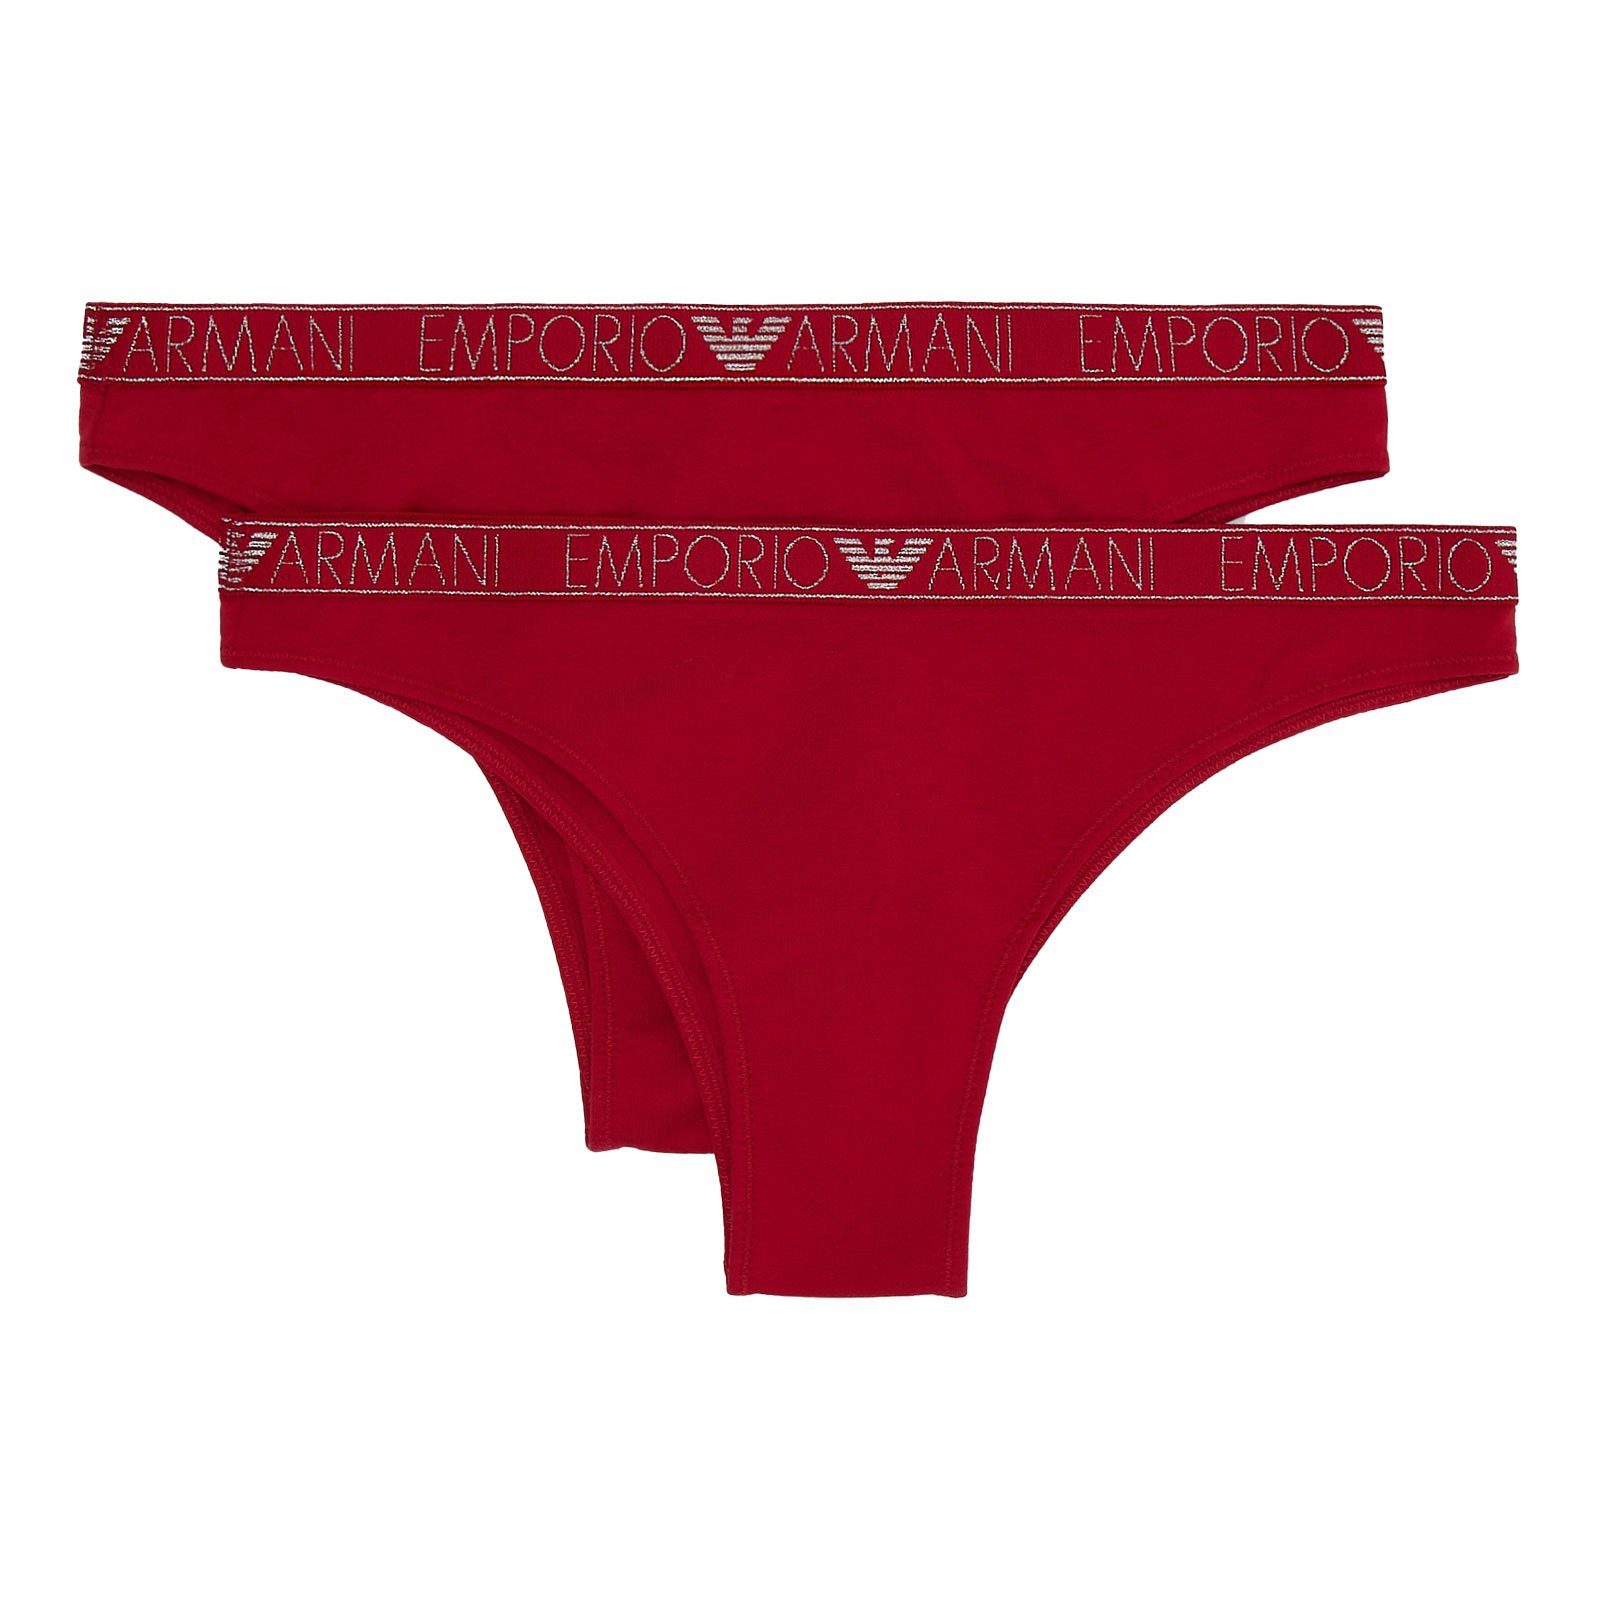 Emporio Armani Brasilslip Brazilian Brief Stretch Cotton (2-St., enthält 2 gleichfarbige, unifarbene Slips) mit umlaufenden Markenschriftzügen in metallischem Glanz 00173 ruby red